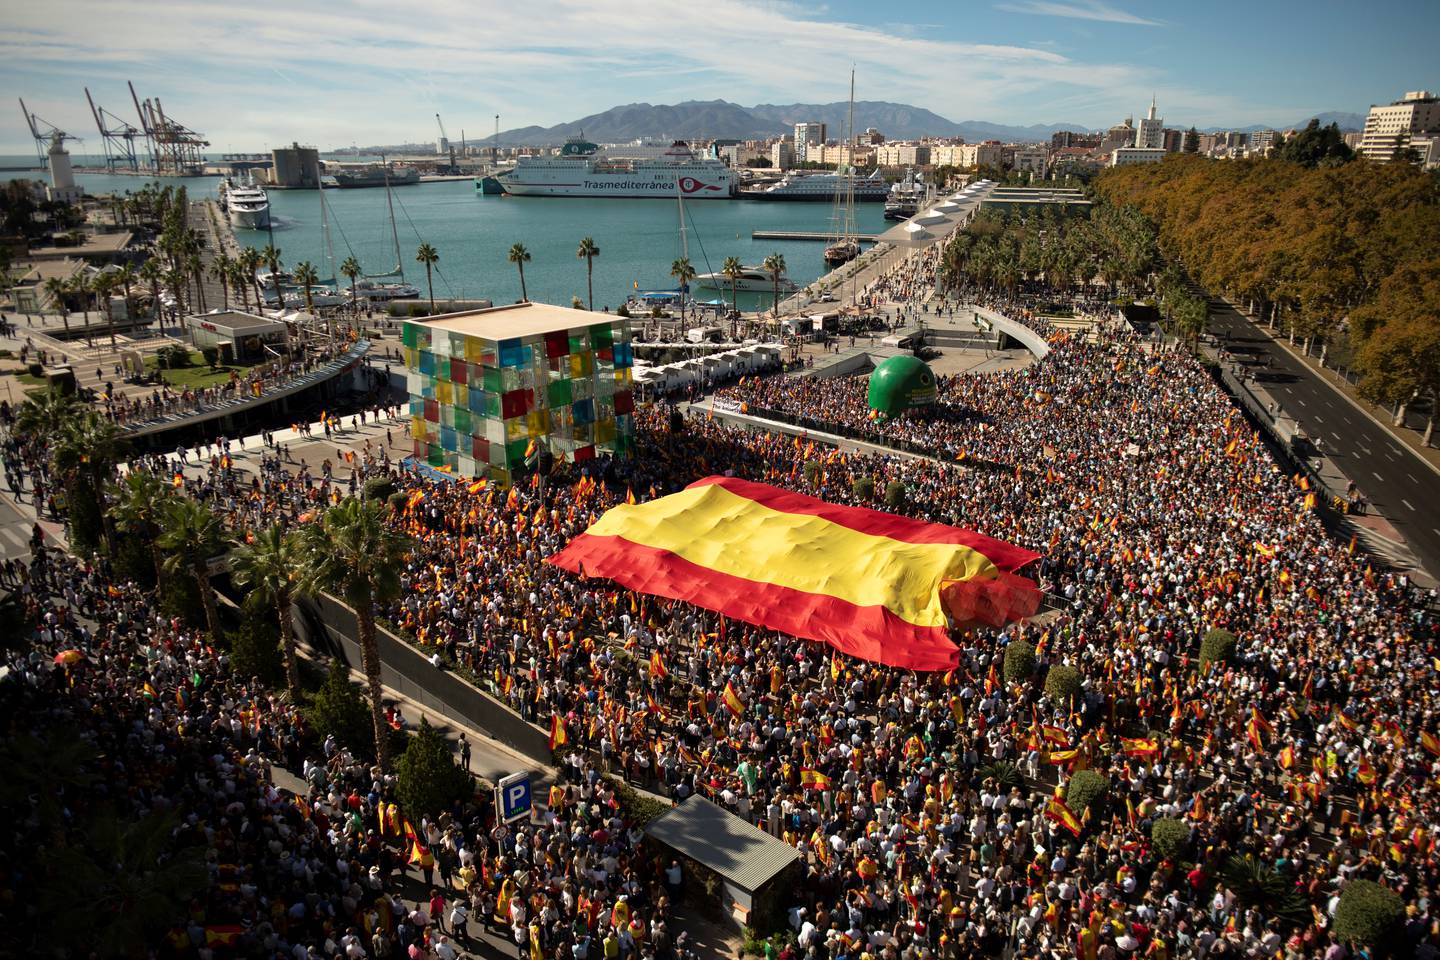 Los manifestantes marchan con una bandera gigante de España durante una protesta convocada por la oposición de derecha contra un proyecto de ley de amnistía para las personas involucradas en el fallido intento de independencia de Cataluña.